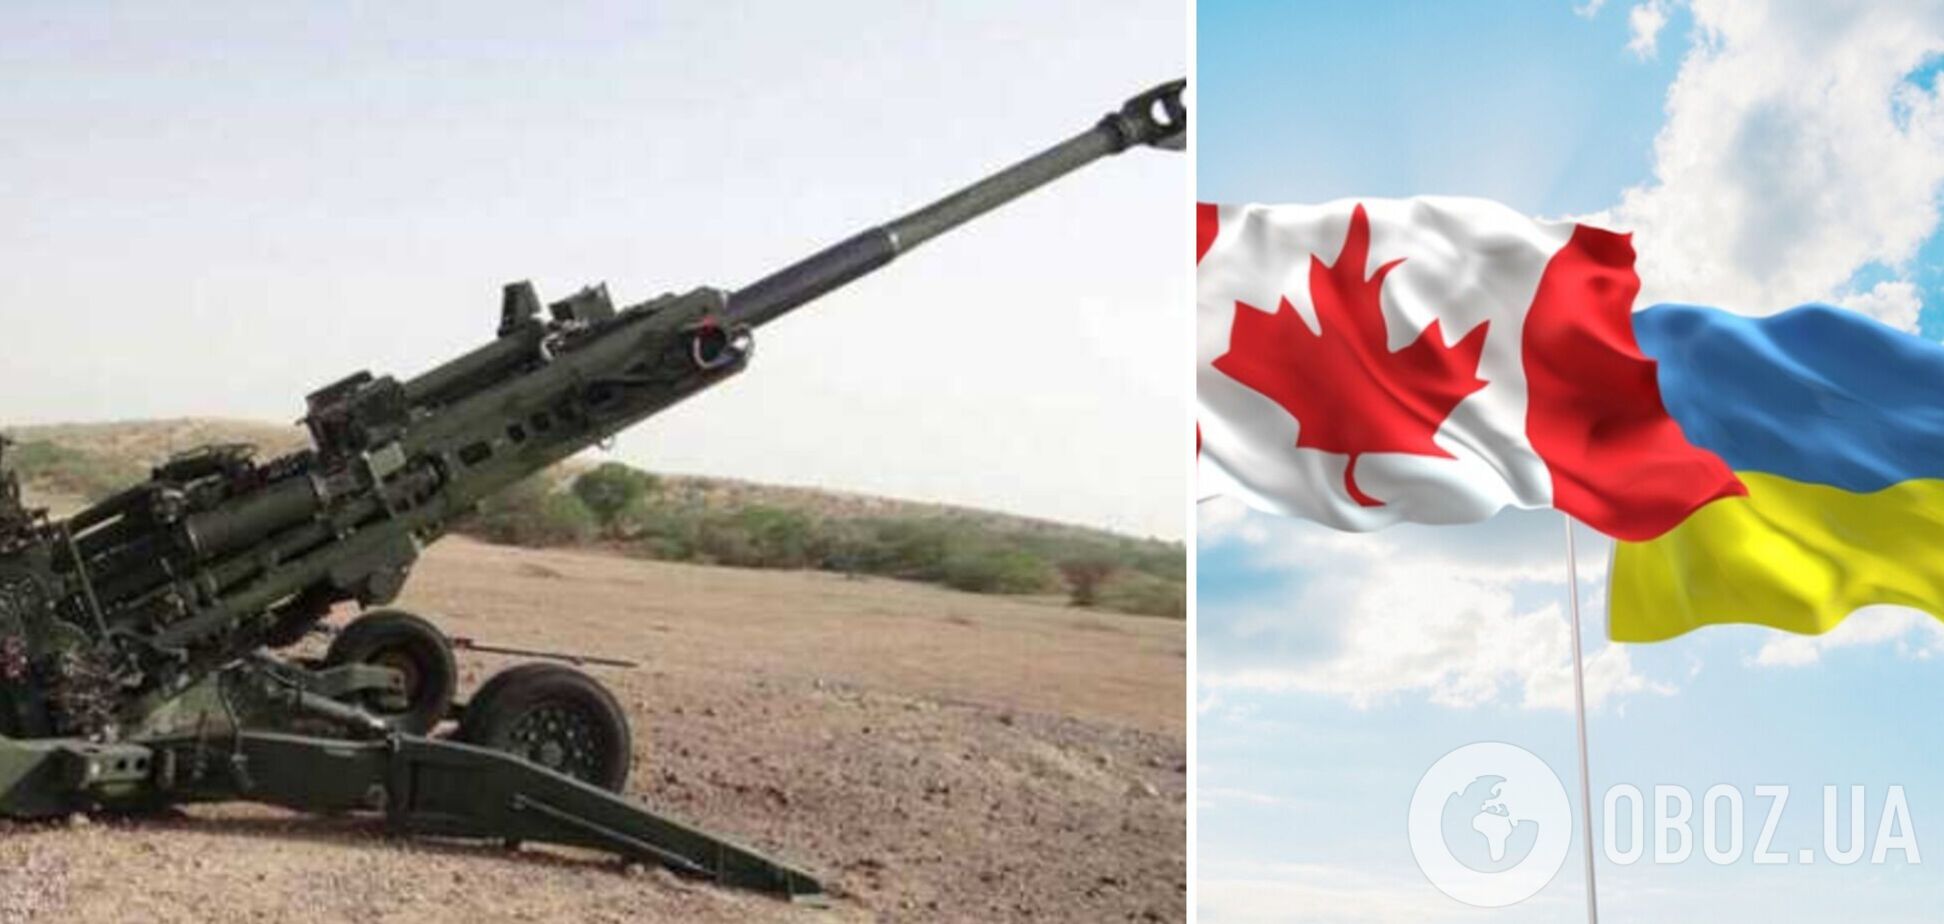 Канада предоставит Украине 10 запасных стволов для гаубиц